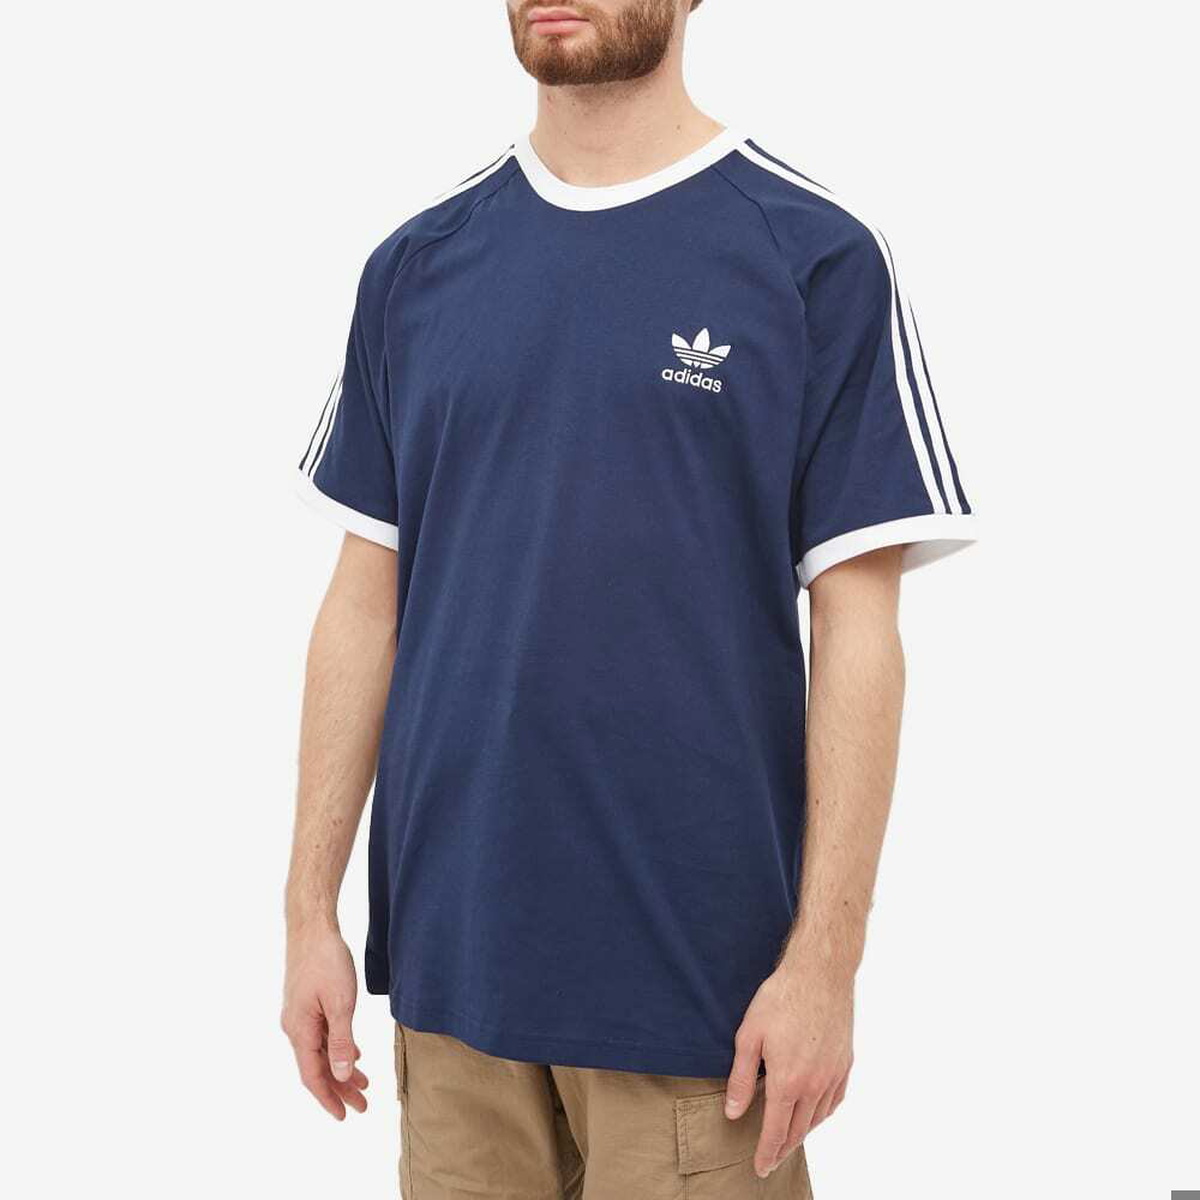 Stripe Adidas Night T-Shirt adidas Indigo Men\'s in 3